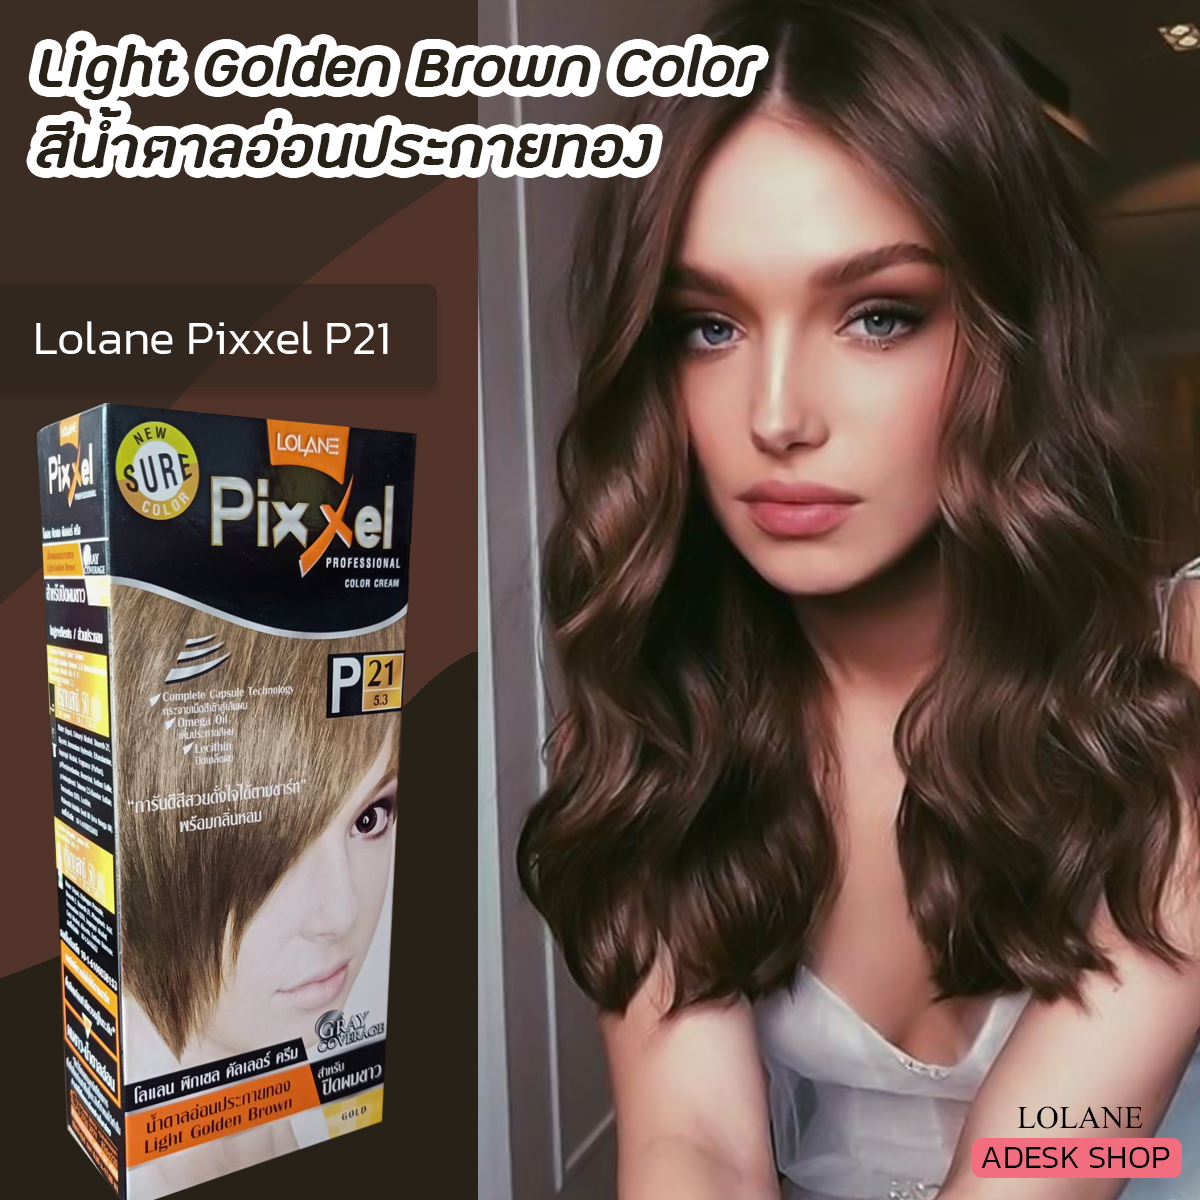 โลแลน พิกเซล P21 สีน้ำตาลอ่อนประกายทอง ครีมย้อมผม สีย้อมผม สีผม เปลี่ยนสีผม  50มล. Lolane Pixxel P21 Light Golden Brown Hair Color Cream | Lazada.Co.Th